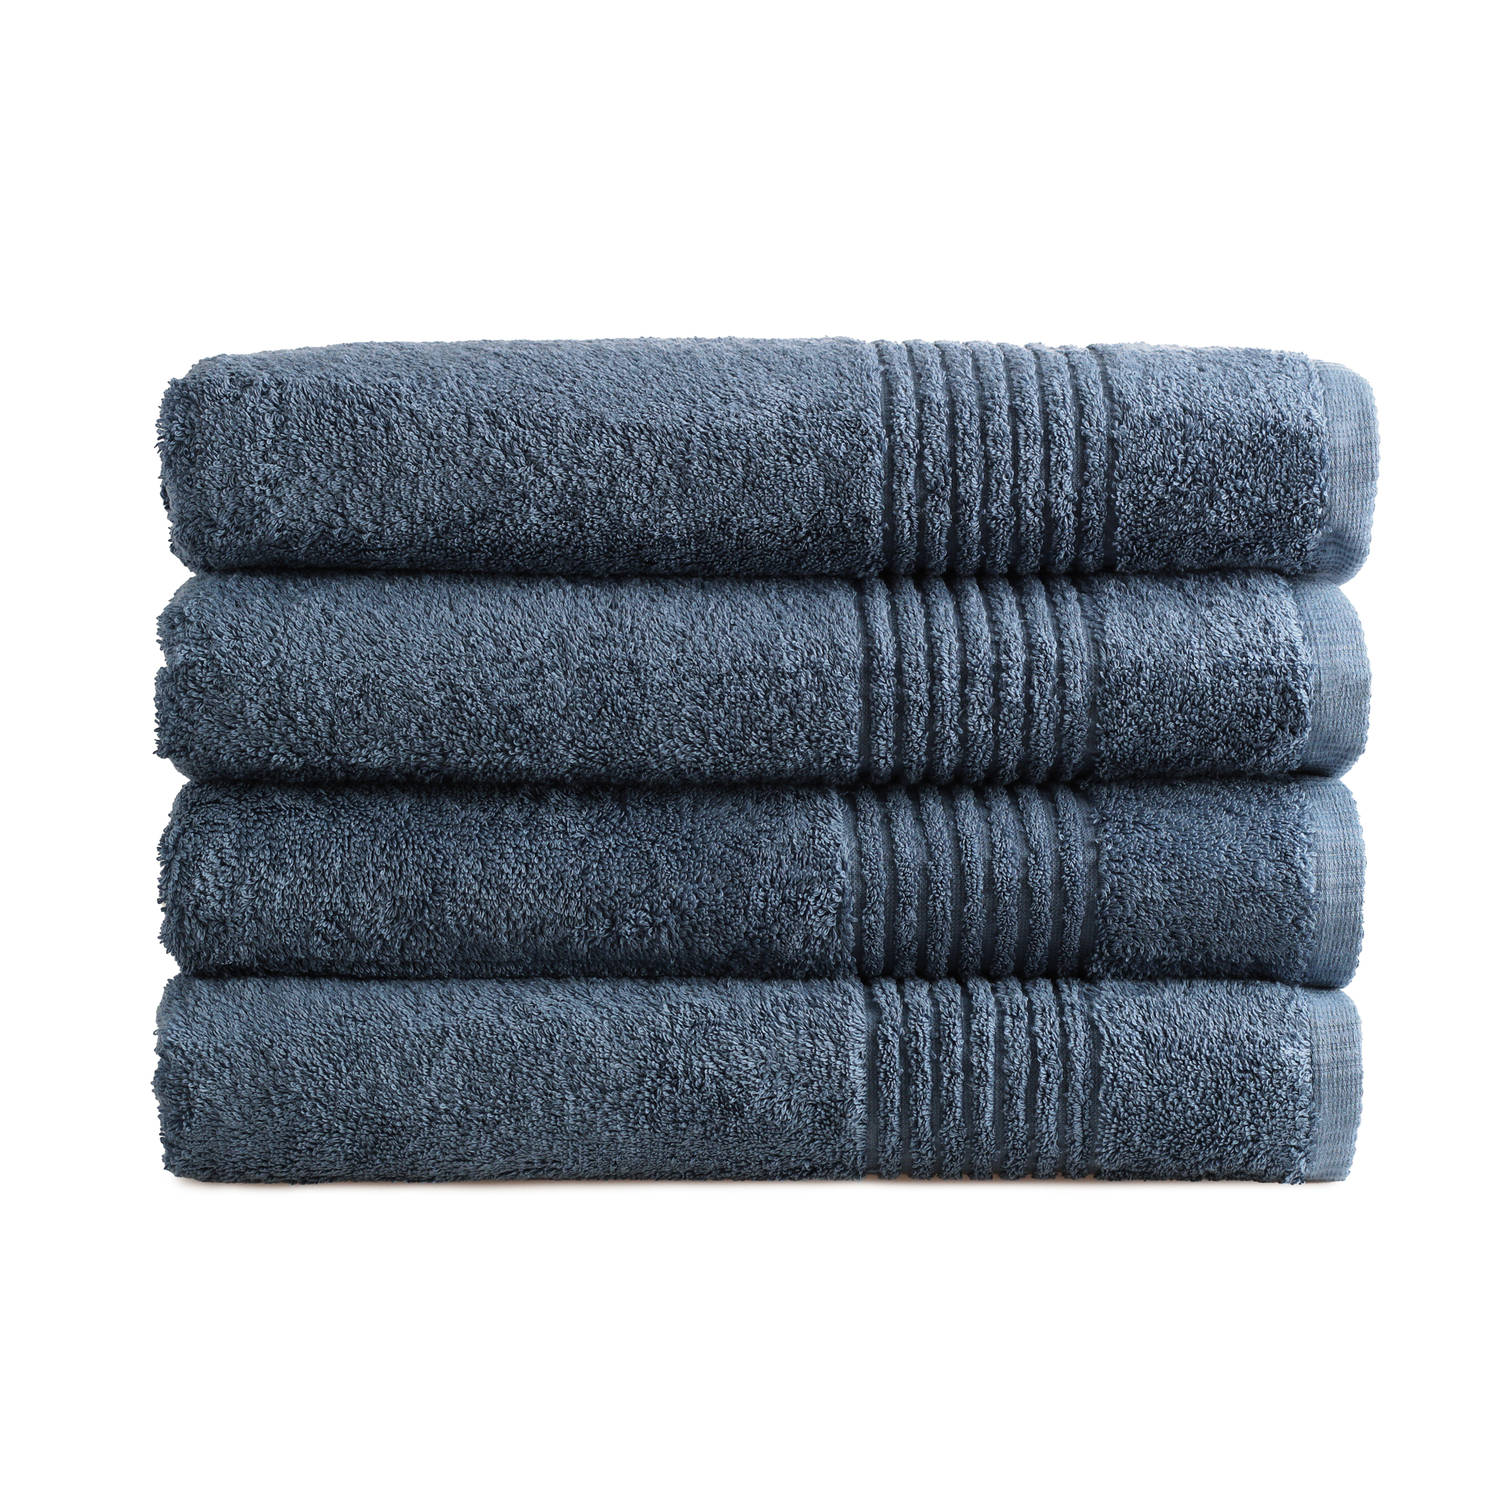 Handdoek Supreme - 70x140 - 4 stuks - OEKO-TEX Made in Green - 600 g/m2 zacht katoen - ijsblauw